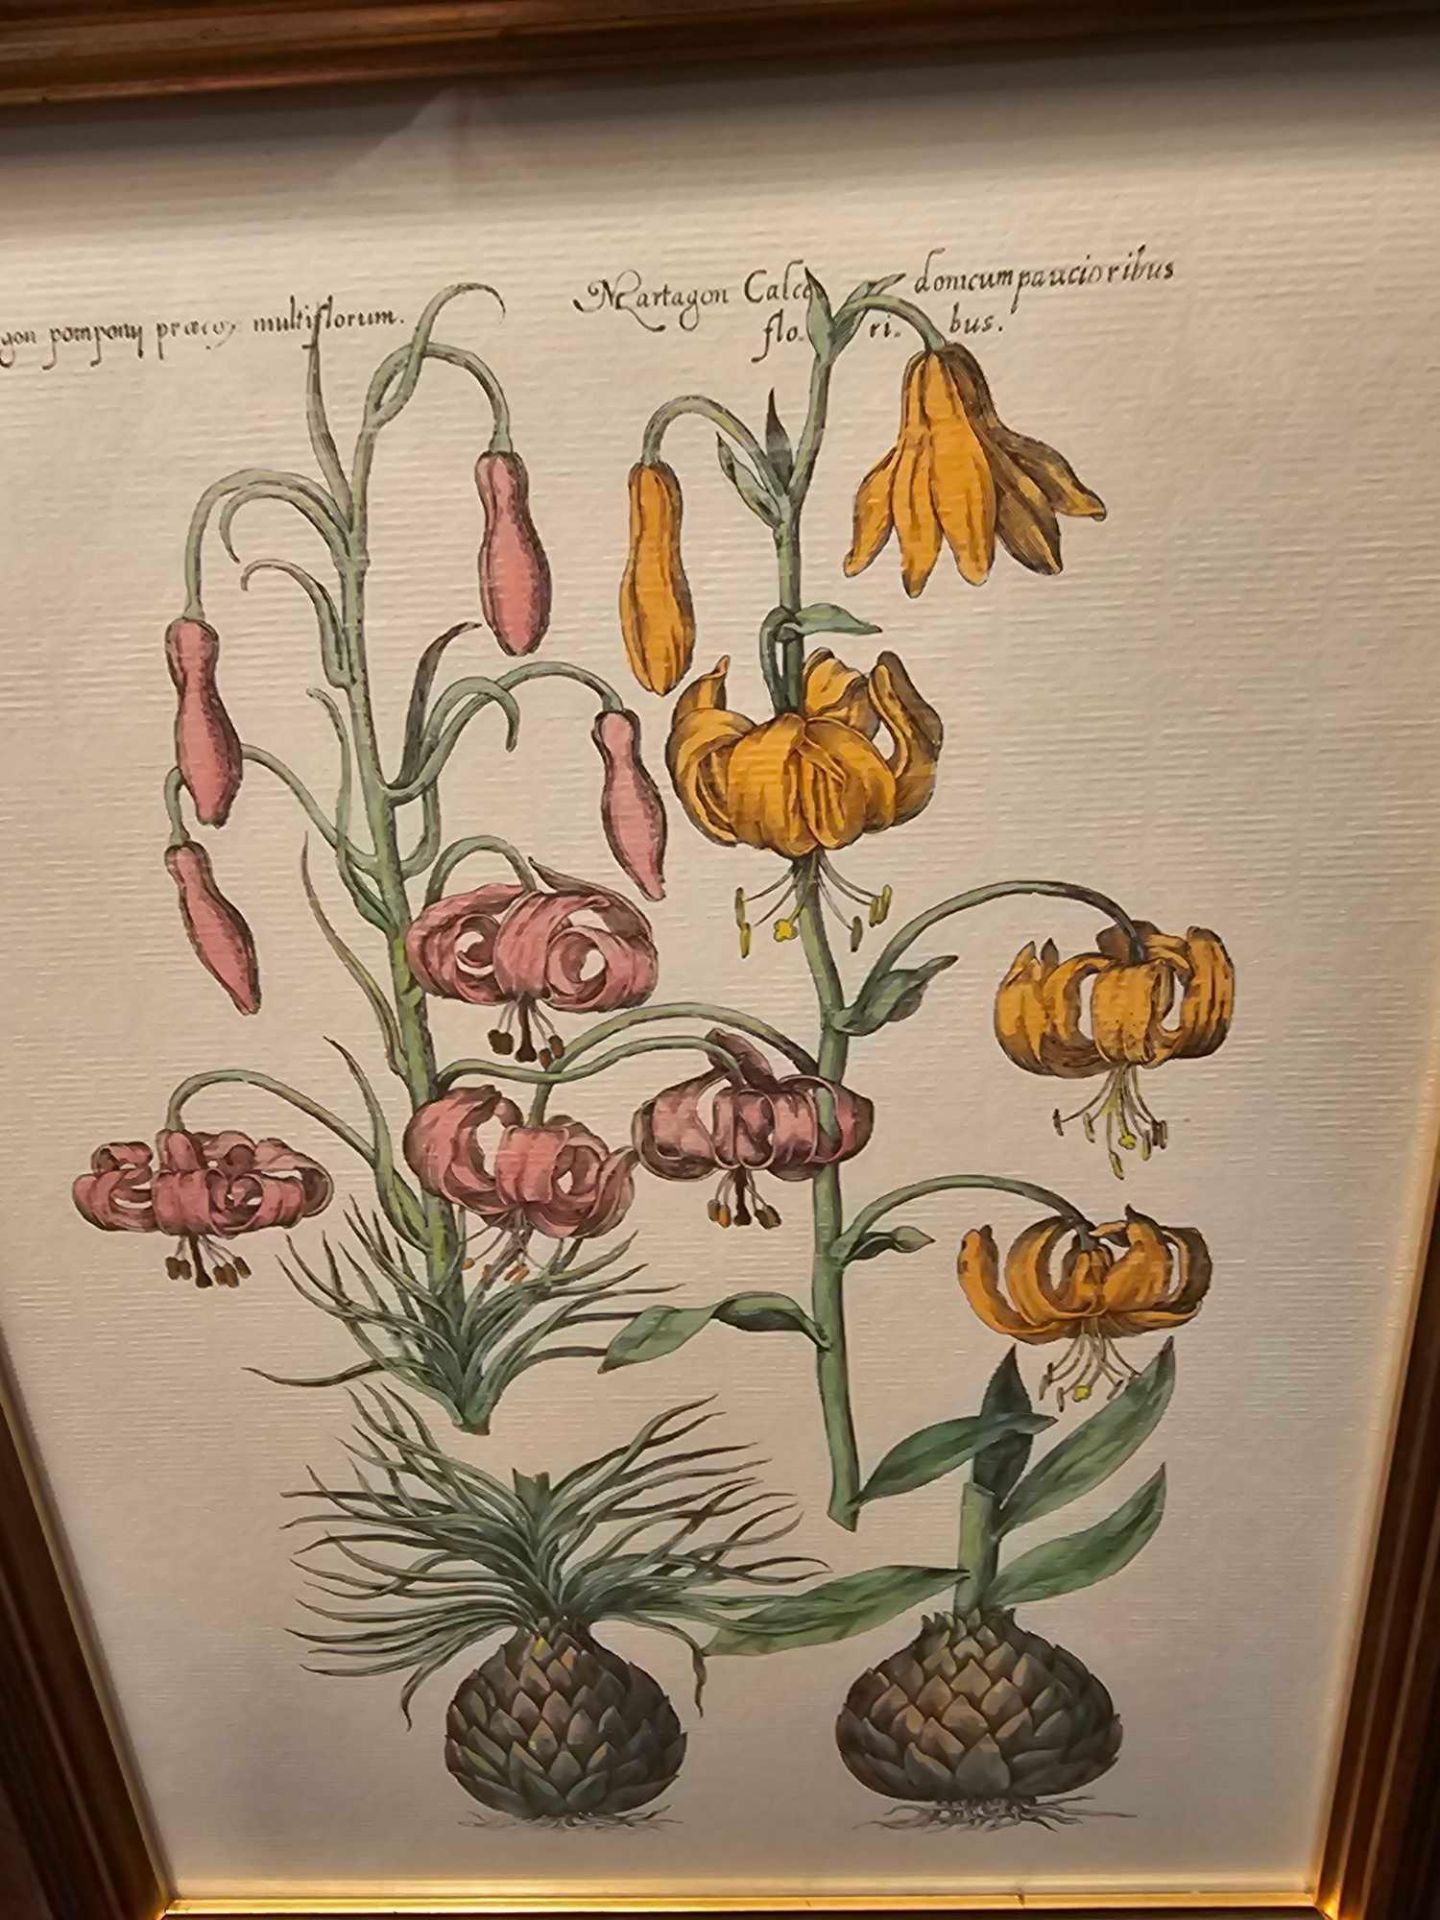 2 x Framed Botanical Prints (1) 230-236 Botanical By Emanuel Sweet C.1612 (2) Liliosphodel, - Image 3 of 4